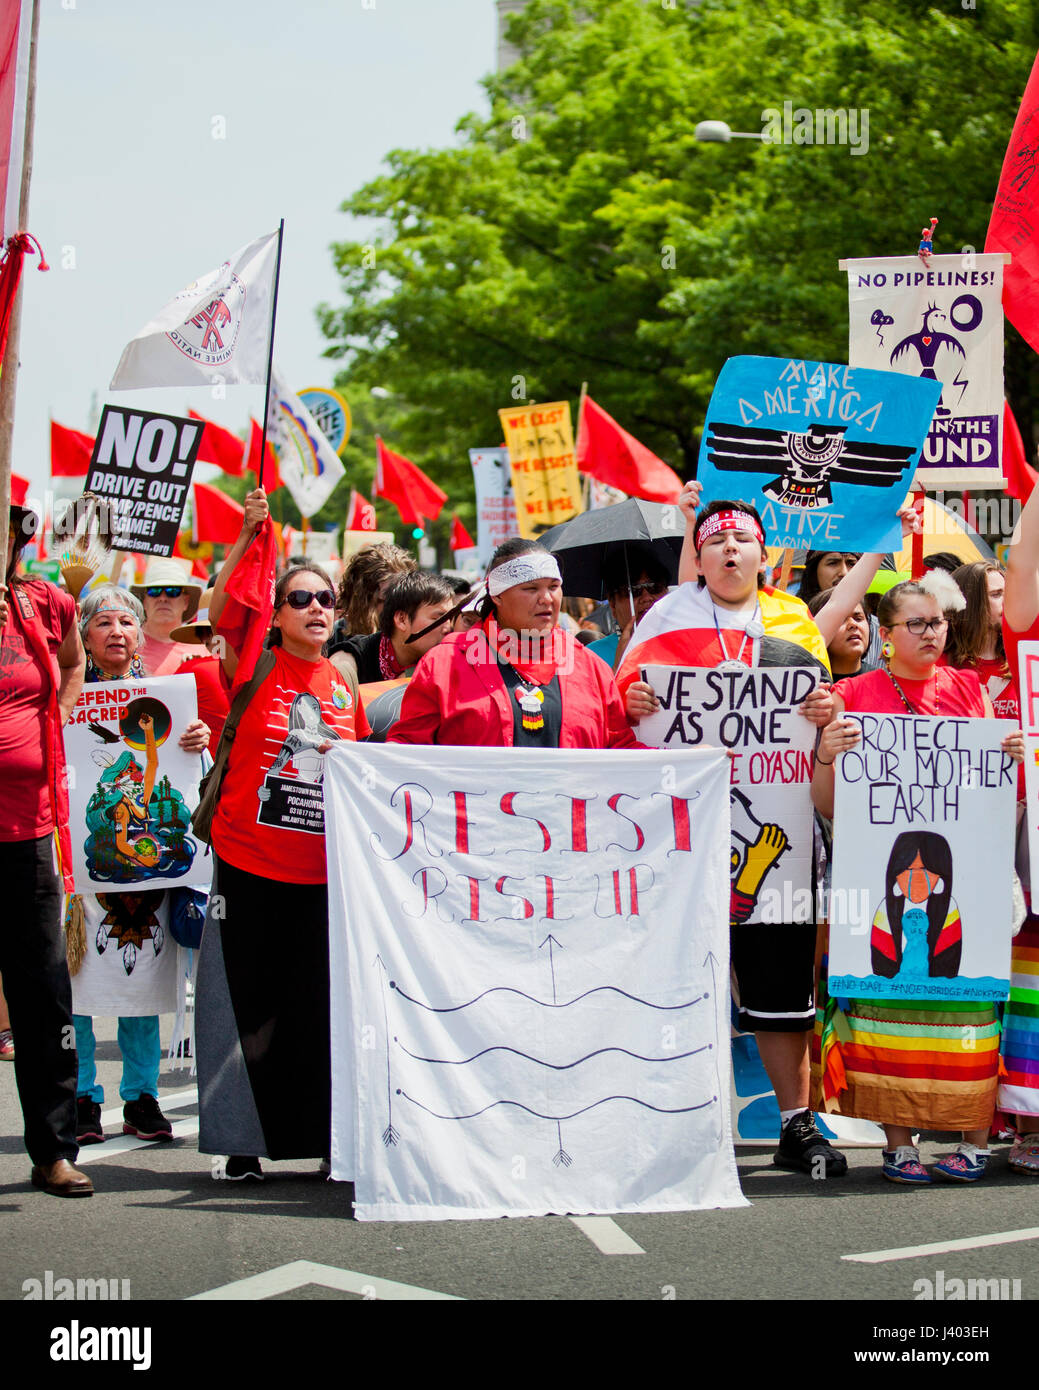 Les Indiens autochtones protestant pendant les changements climatiques Mars - Avril 29, 2017, Washington, DC, USA Banque D'Images